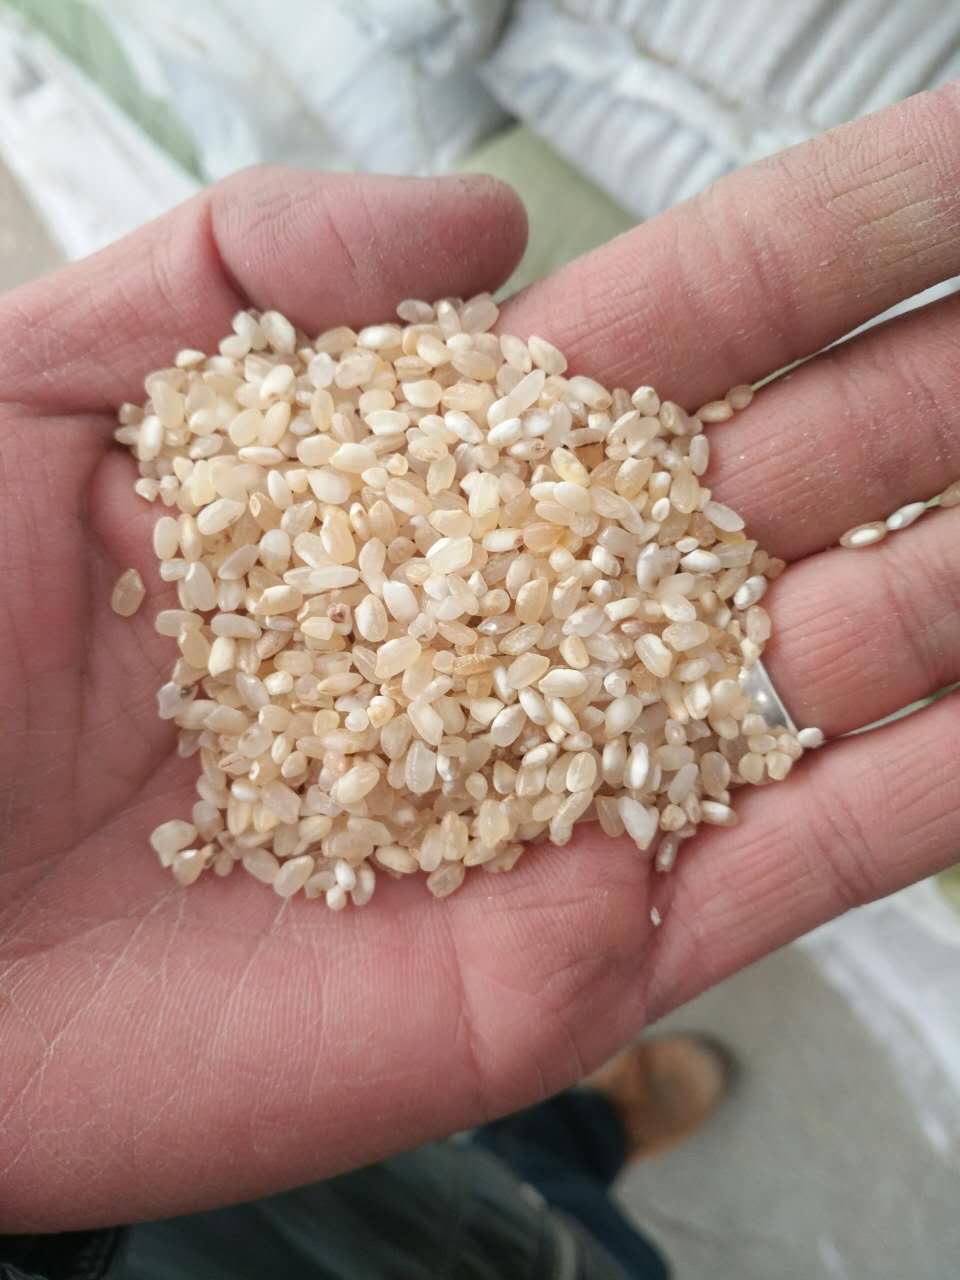 供应用于食品做酒的碎米 酒米 碎米、 酒米 老米、酒米 老米批发 大米副产品